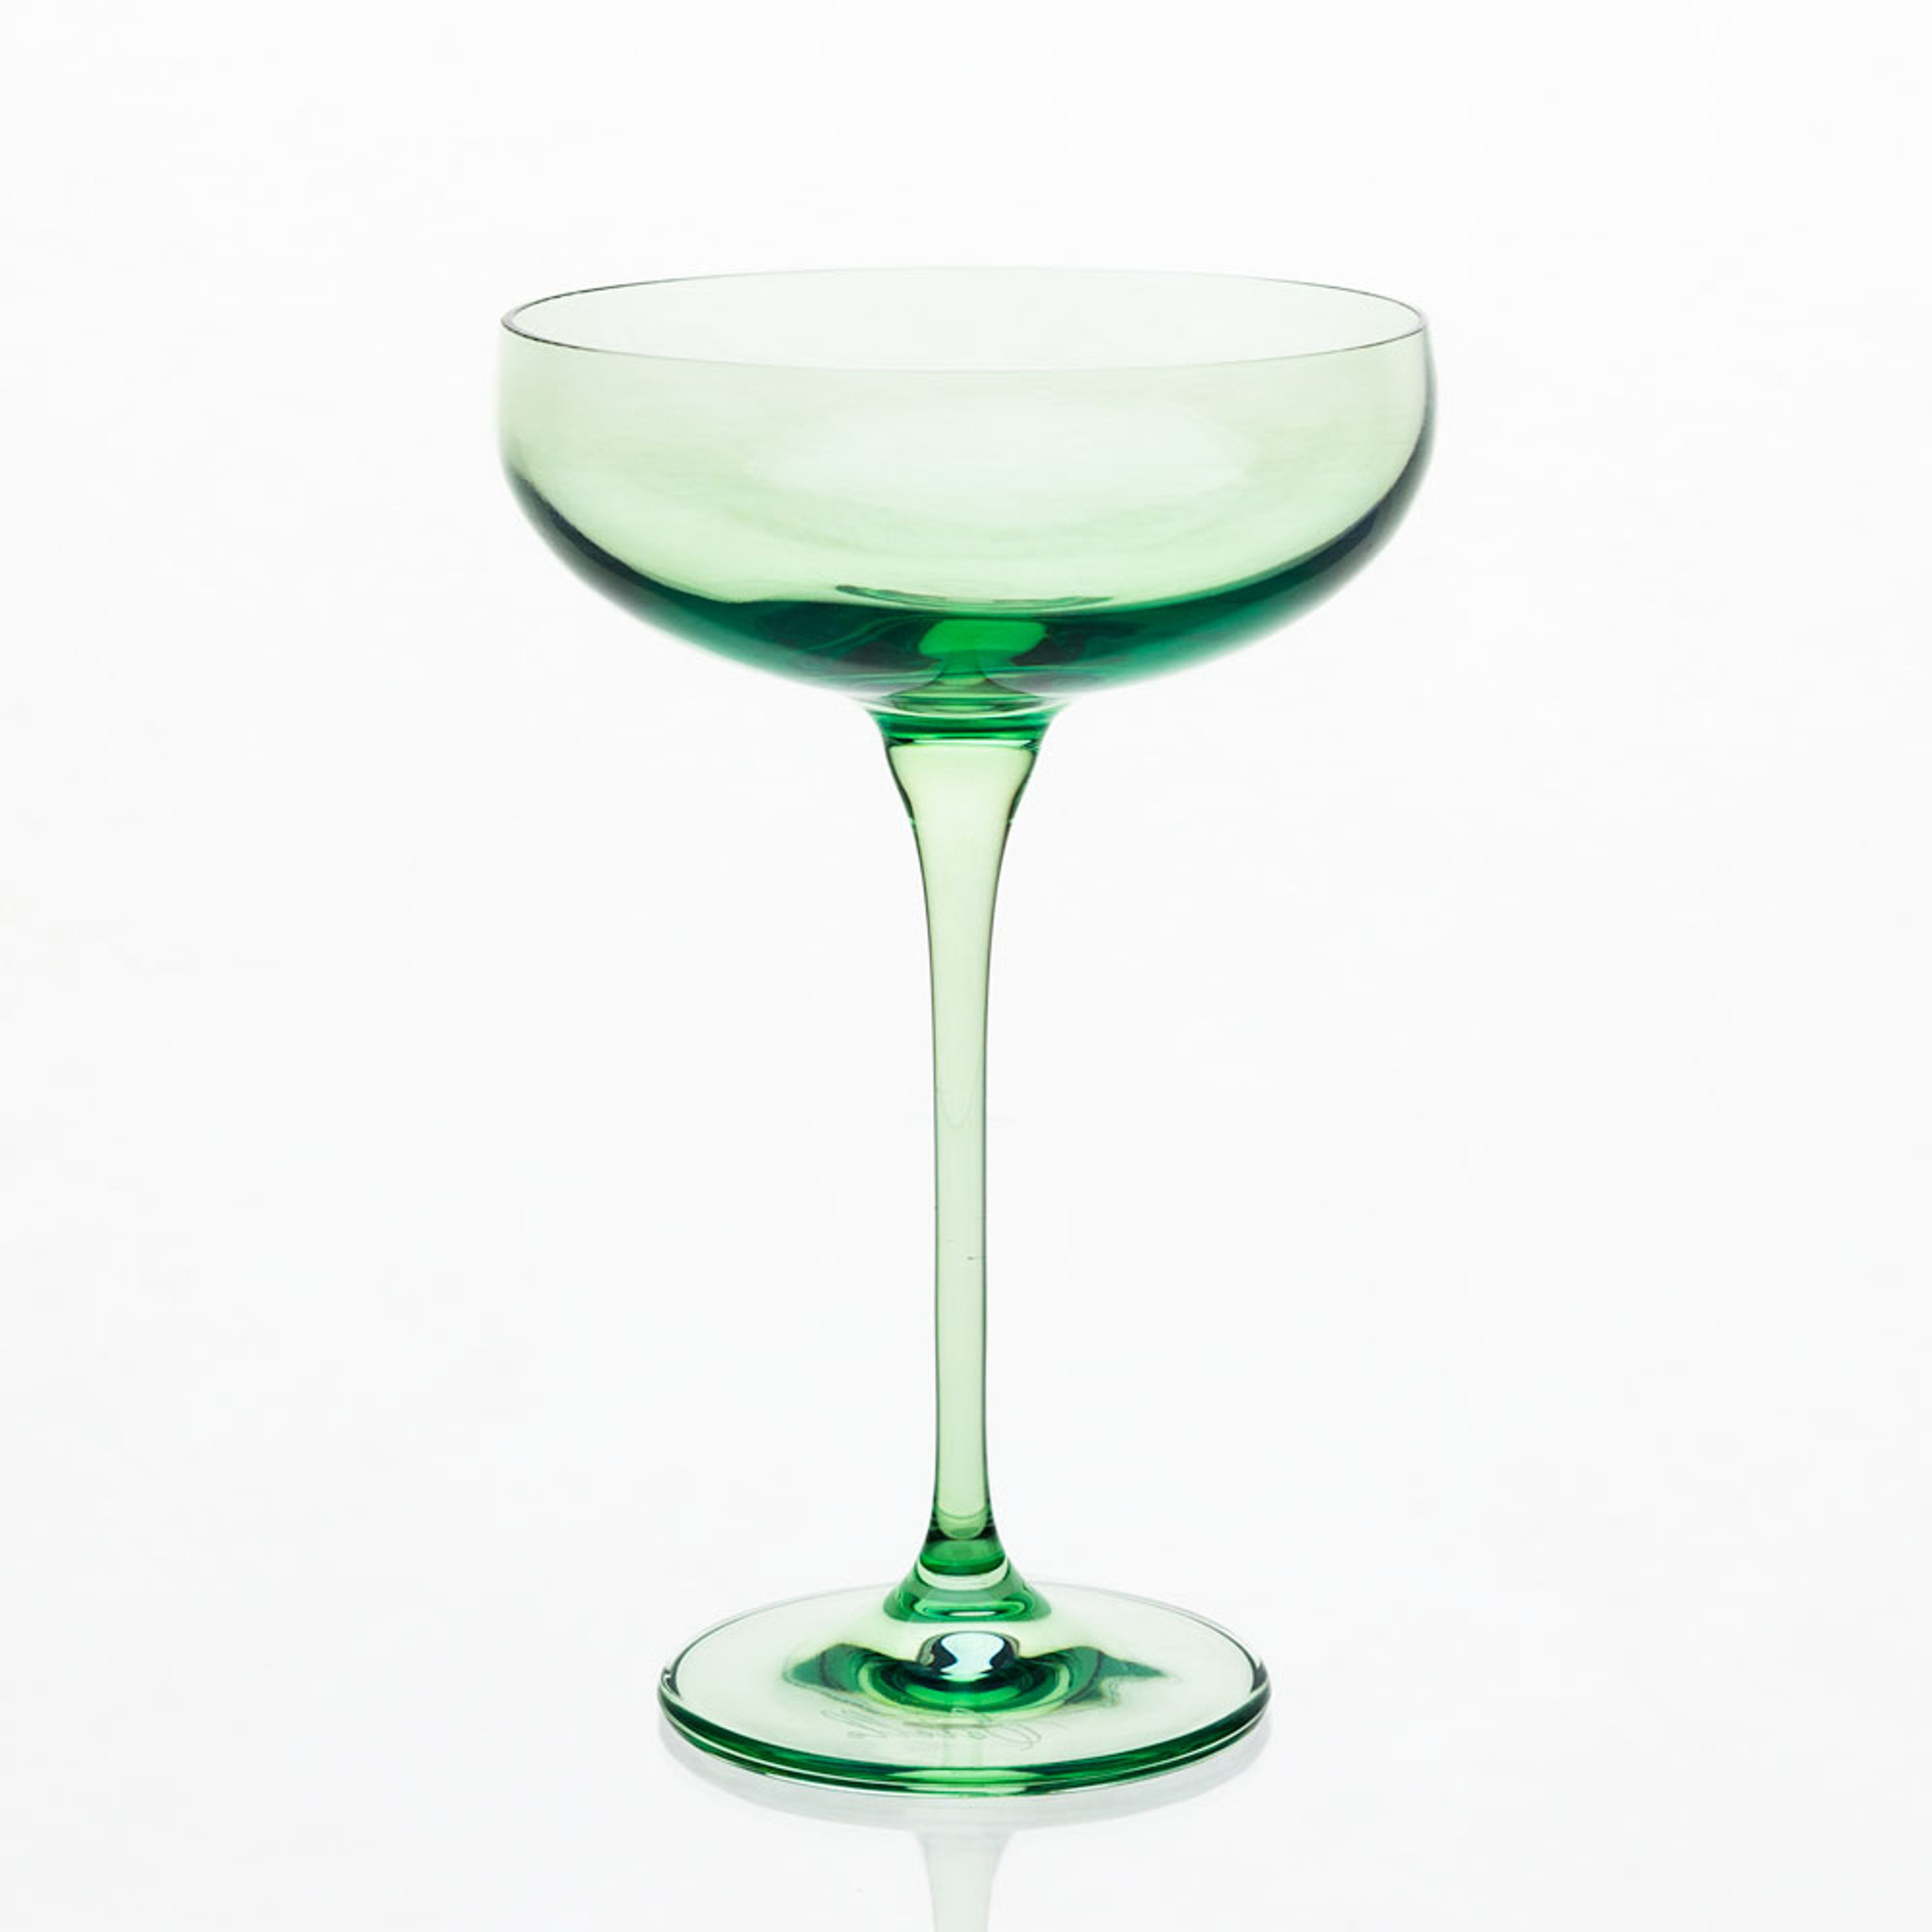 Champagne Flutes in Mint Green (set of 6) - Fieldshop by Garden & Gun